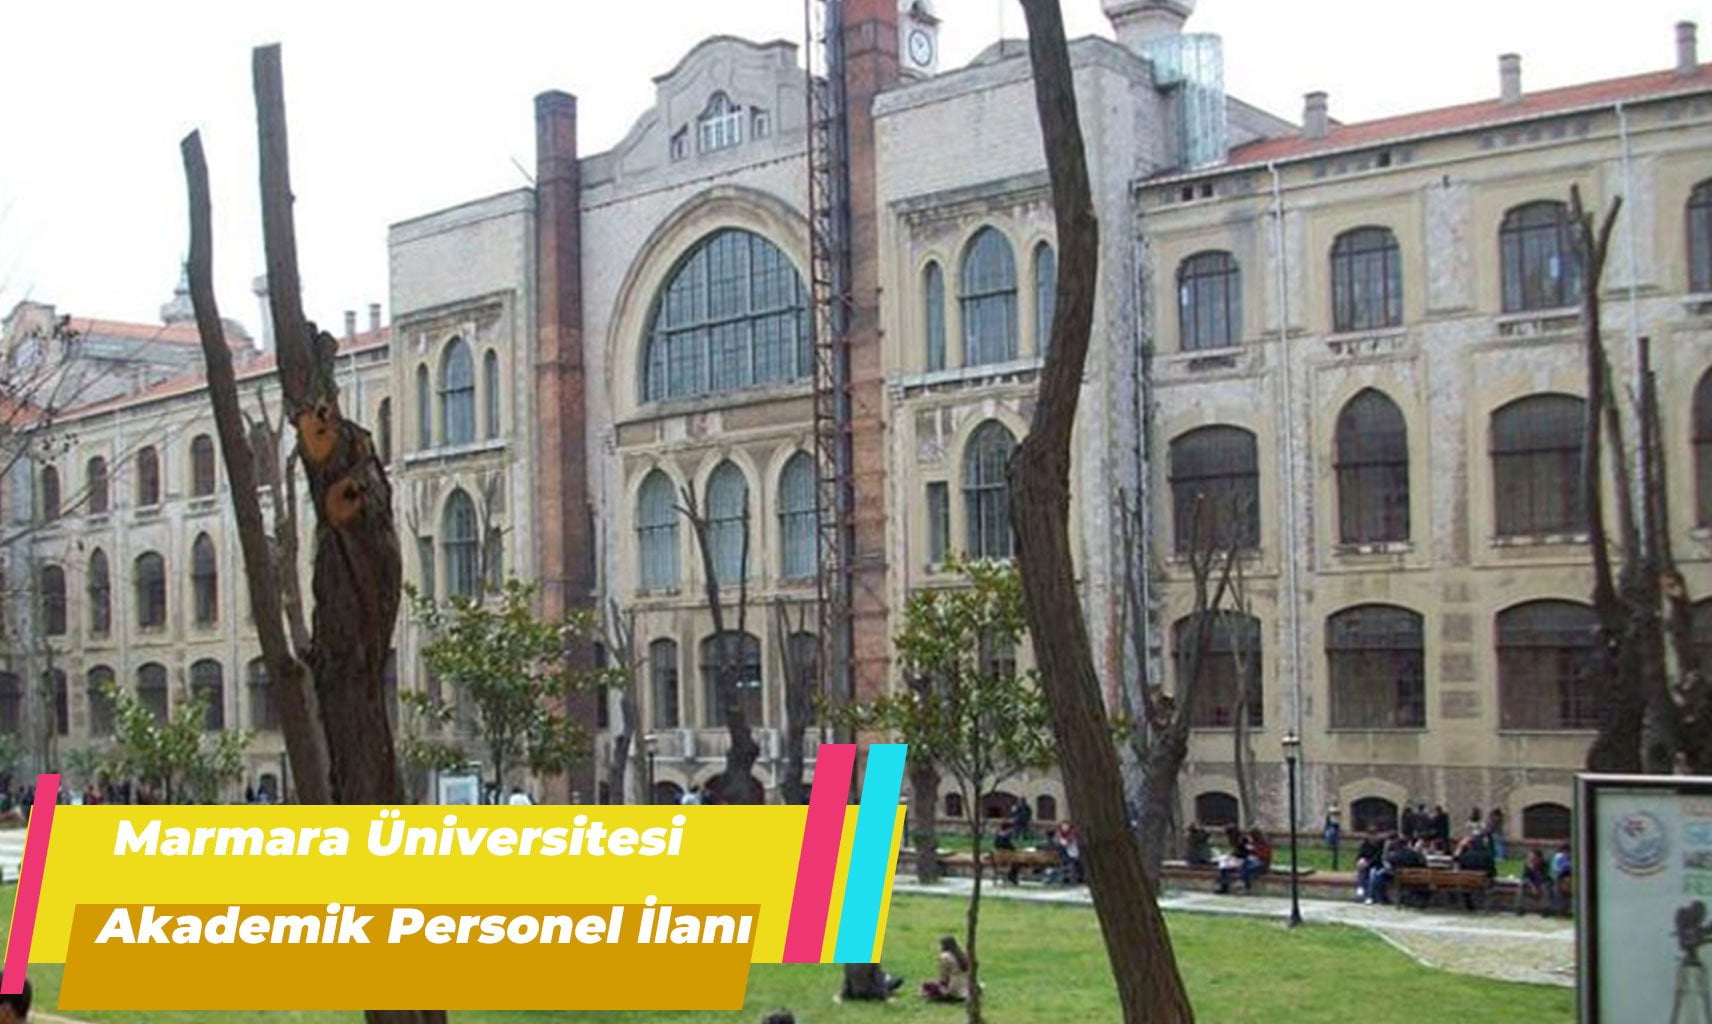 Marmara Üniversitesi Akademik Personel Alımı İlanı